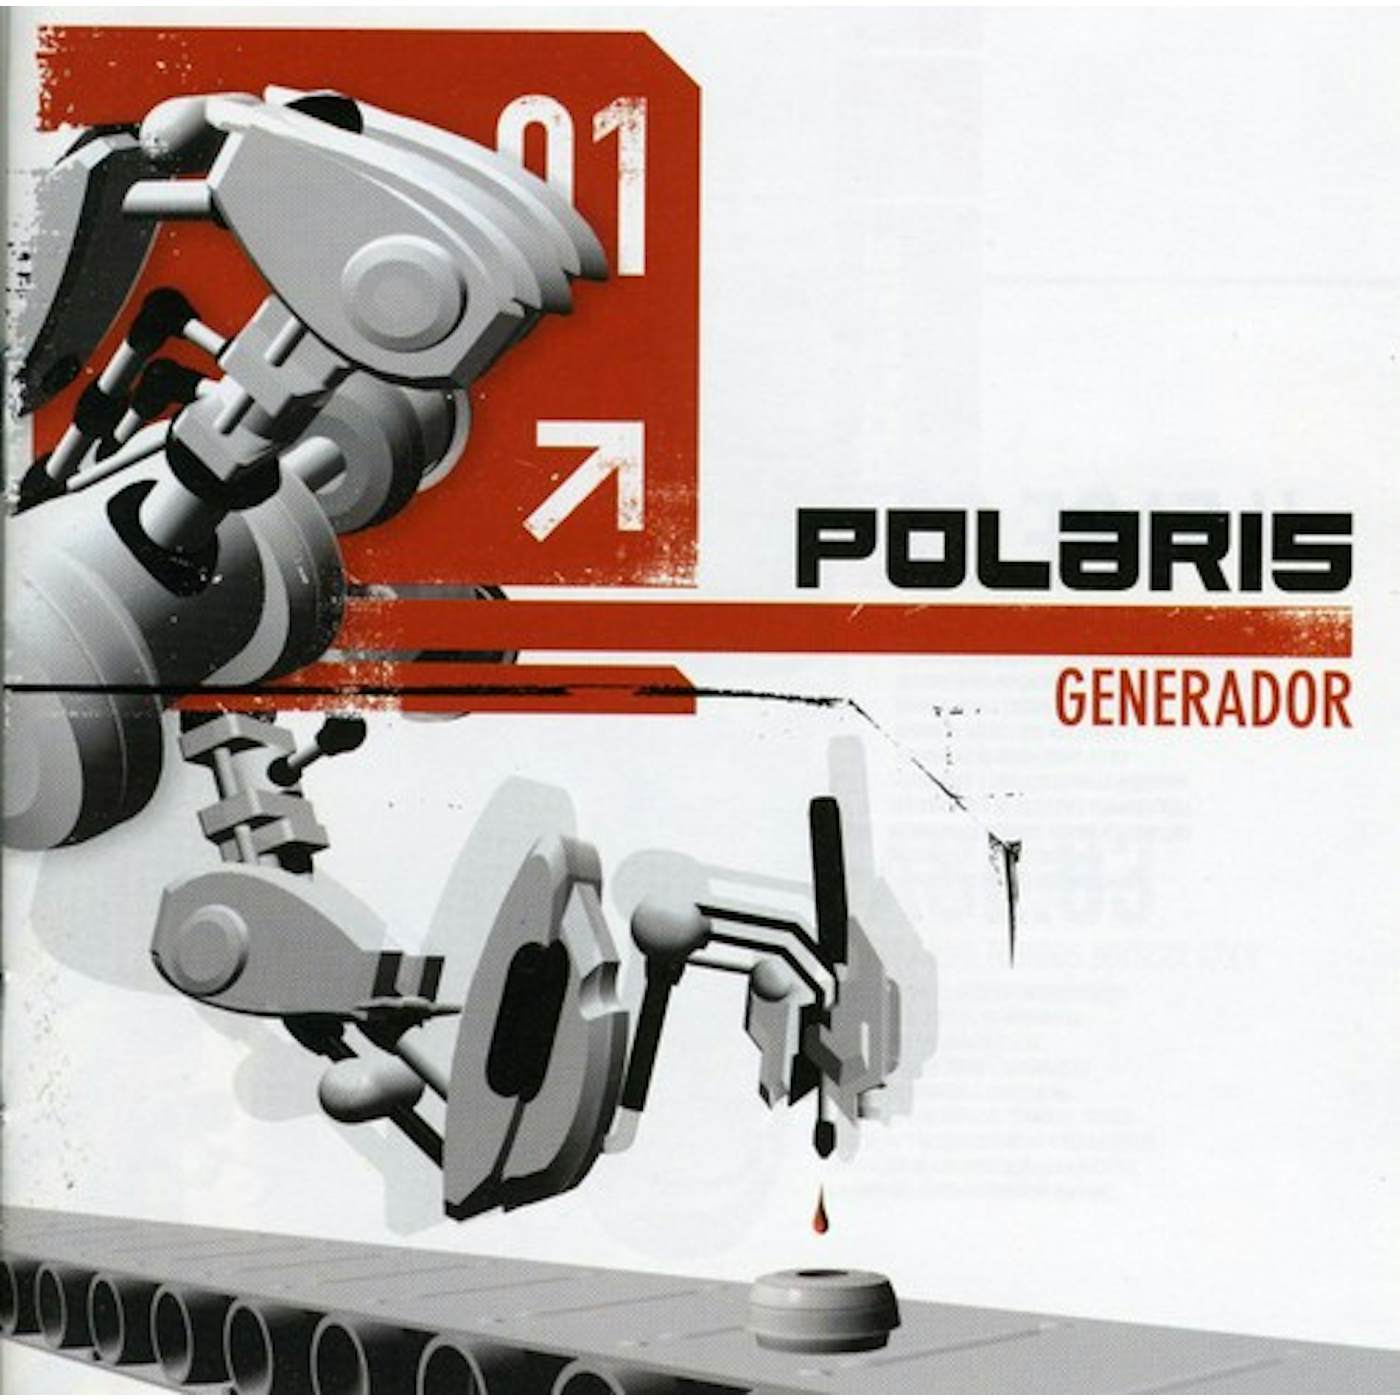 Polaris GENERADOR CD